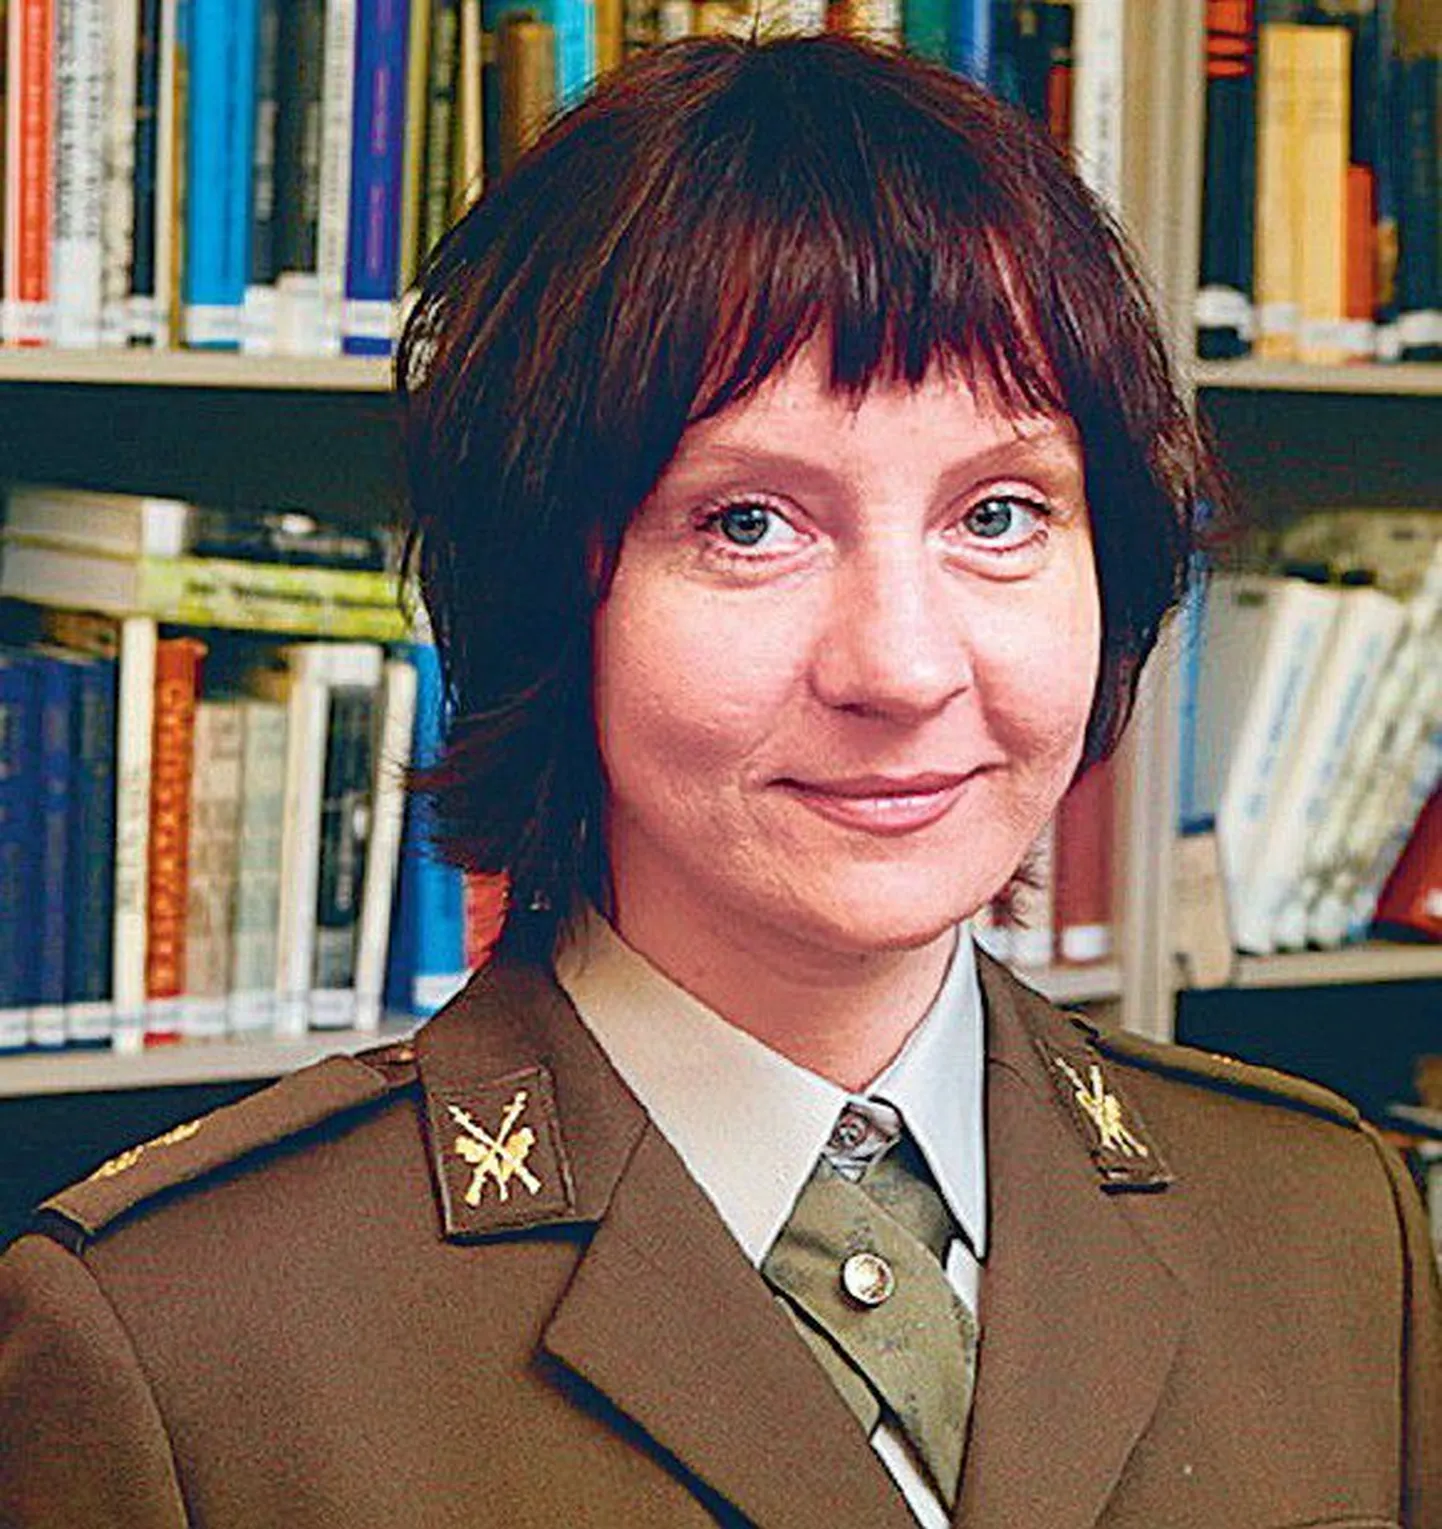 Eesti sõjaväepsühholoog leitnant Merle Parmak sõdureile antidepressante välja ei kirjuta.